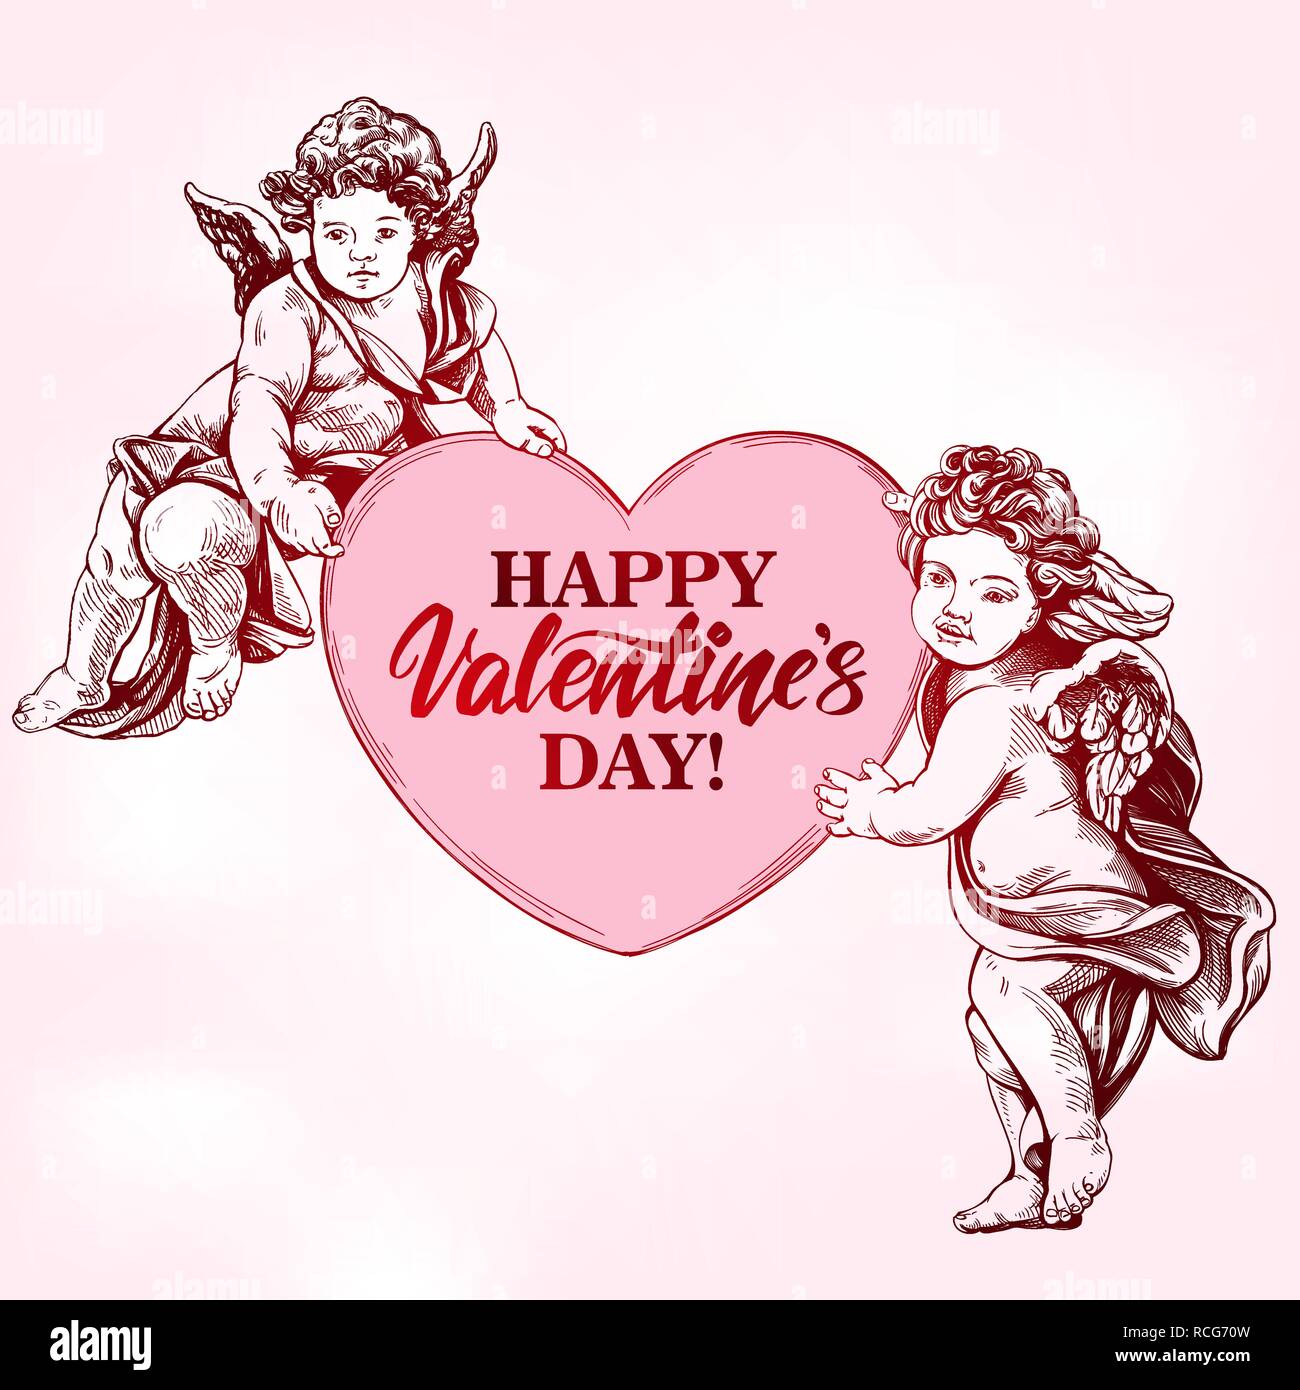 Engel oder Amor, kleines Baby hält ein Herz, Valentinstag, Liebe, Grußkarte Hand gezeichnet Vektor-illustration realistische Skizze Stock Vektor